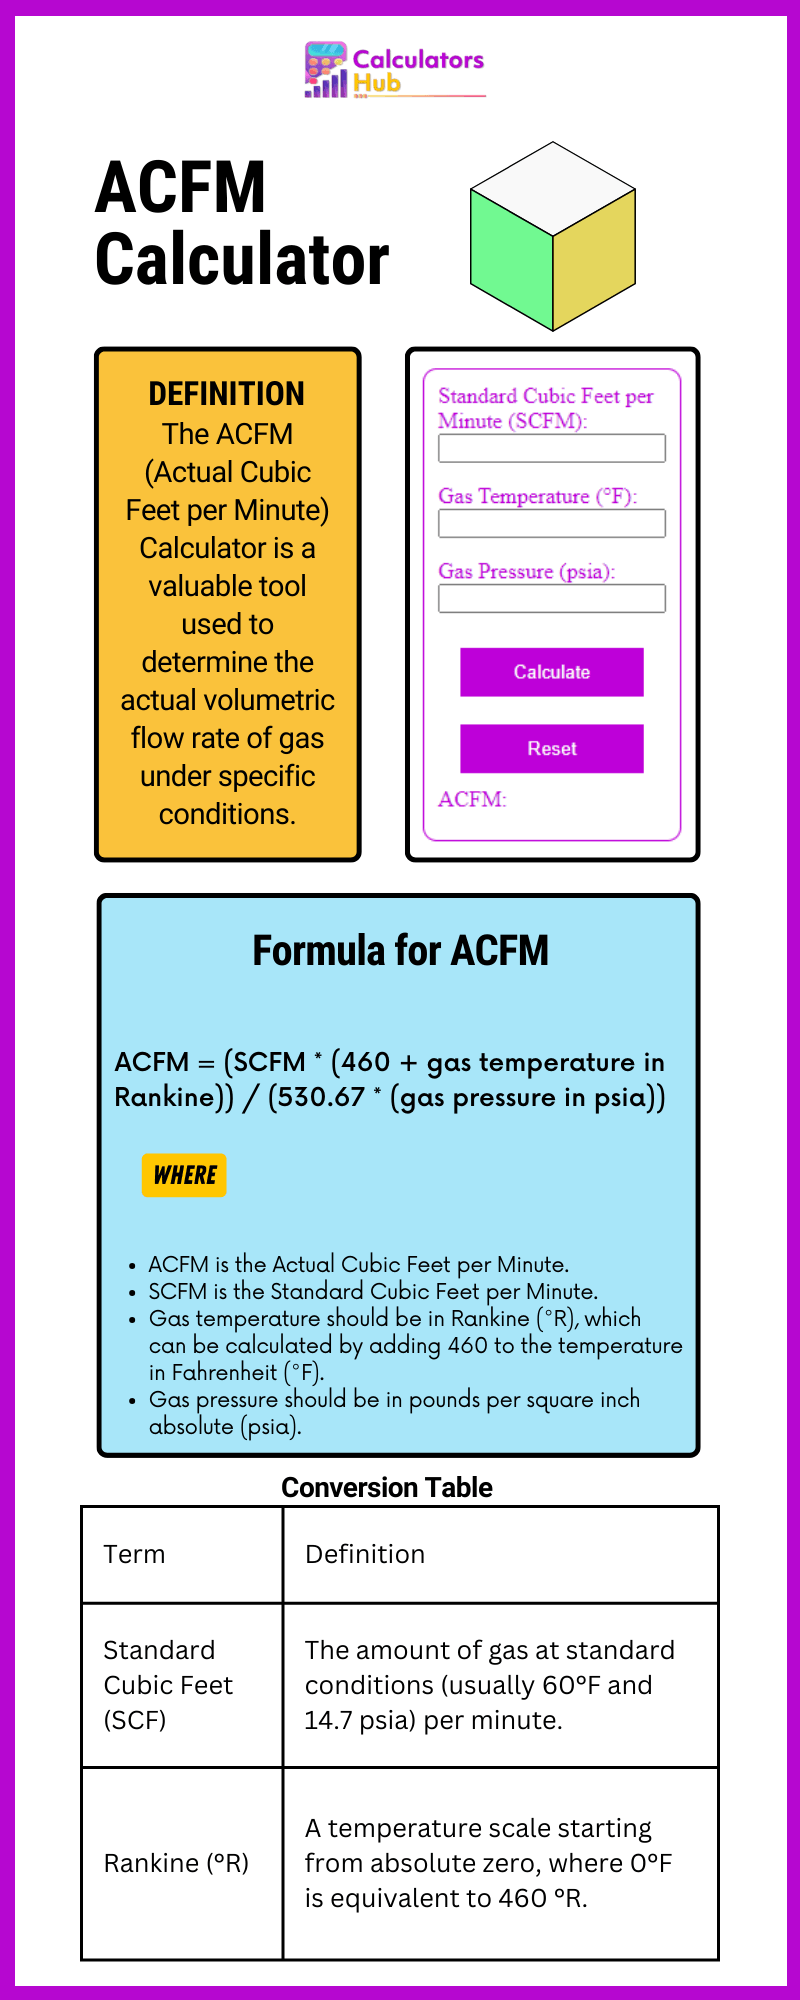 ACFM Calculator